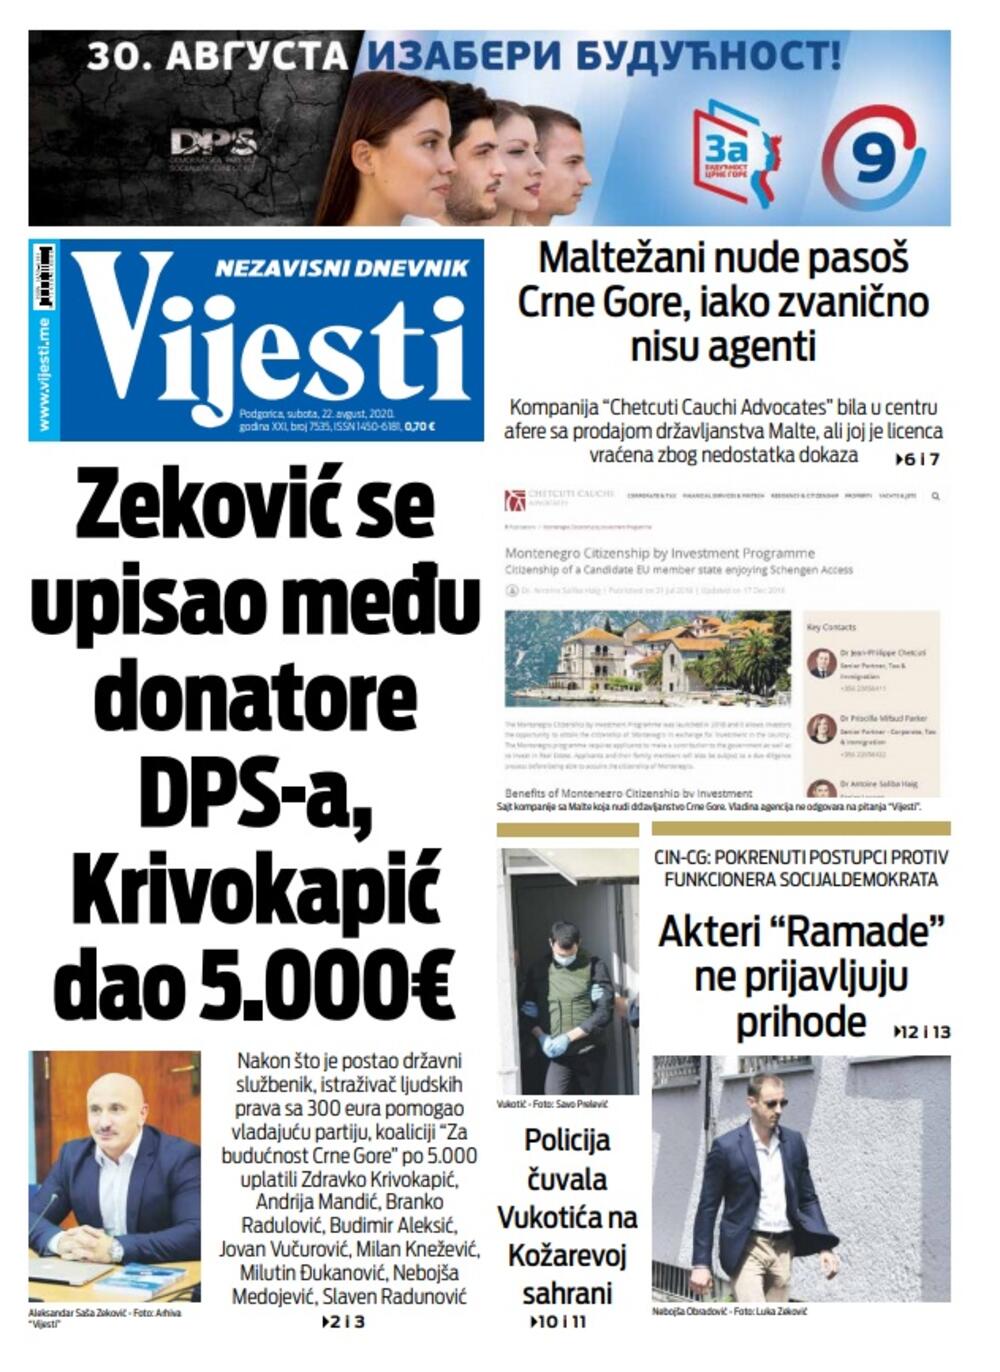 Naslovna strana "Vijesti" za subotu 22. avgust 2020. godine, Foto: Vijesti